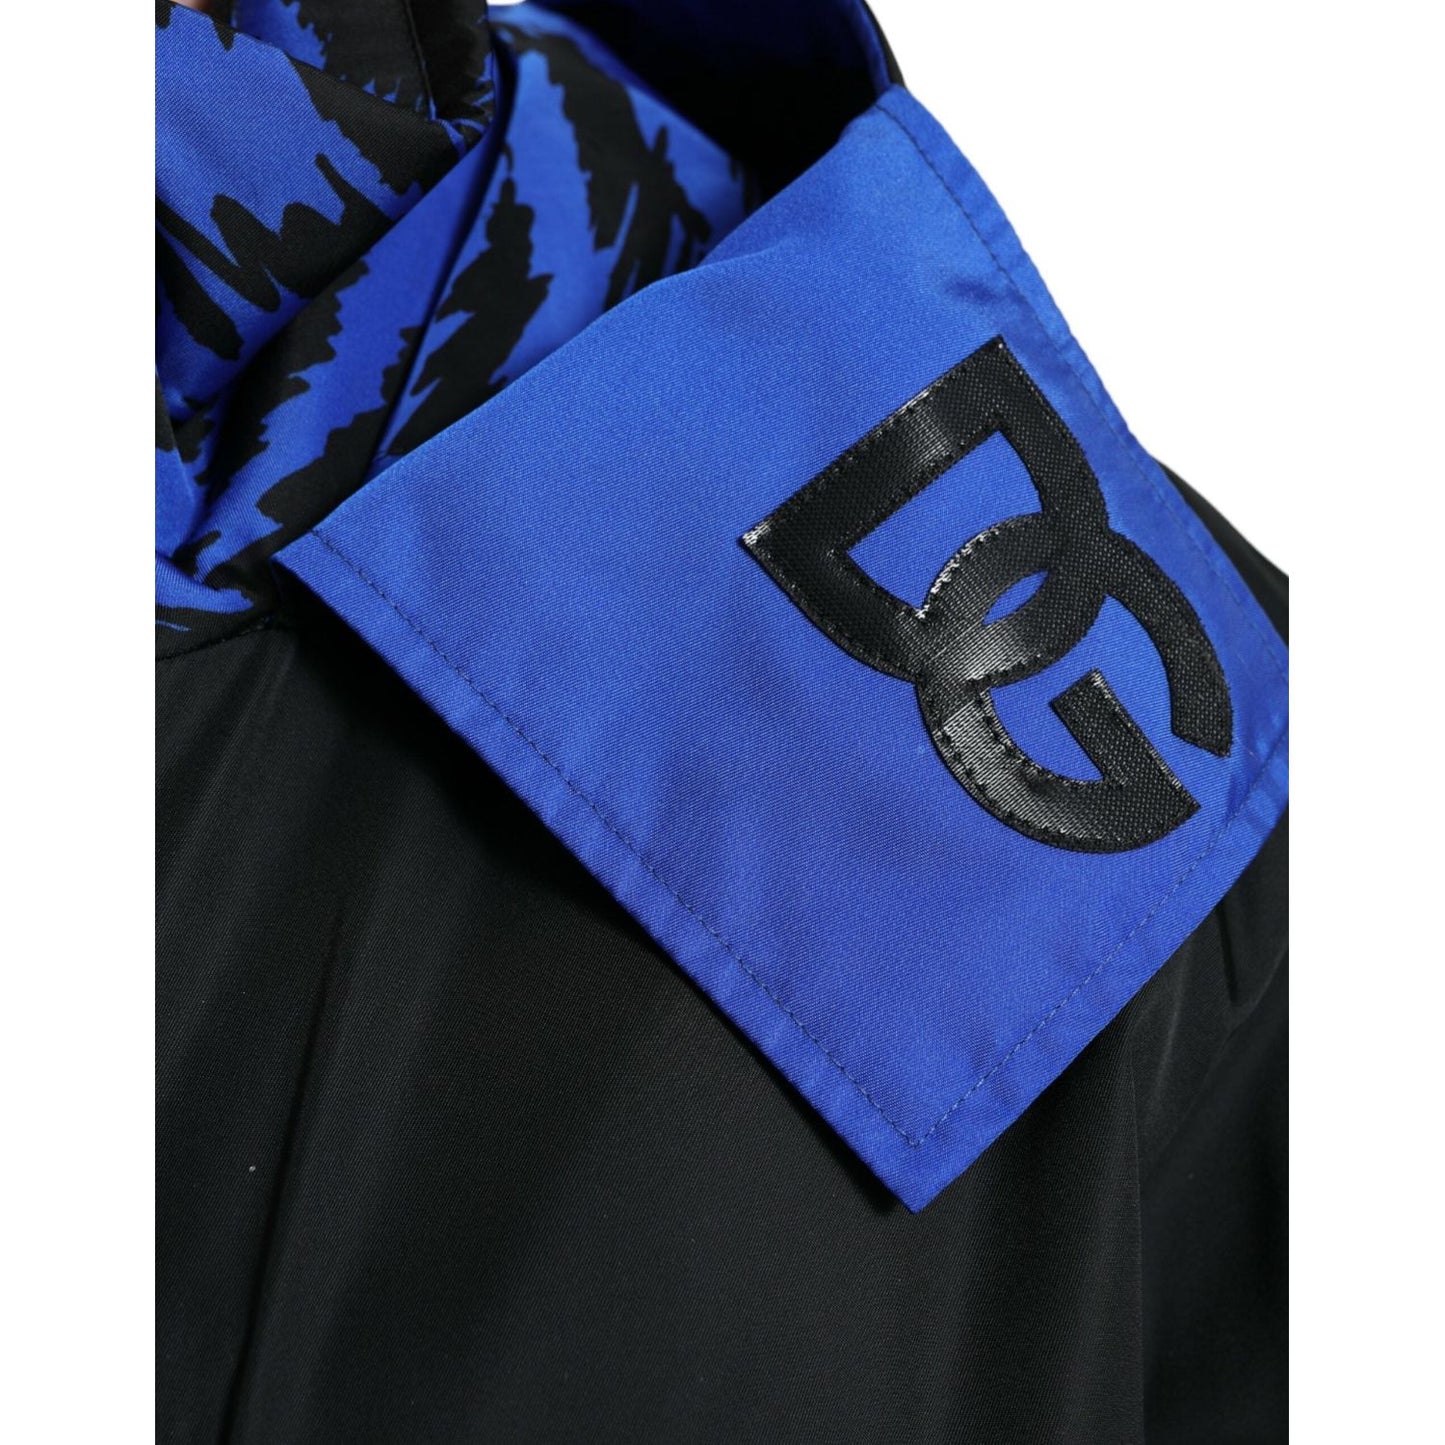 Dolce & Gabbana Reversible Nylon Windbreaker With Hood black-blue-hooded-windbreaker-coat-jacket